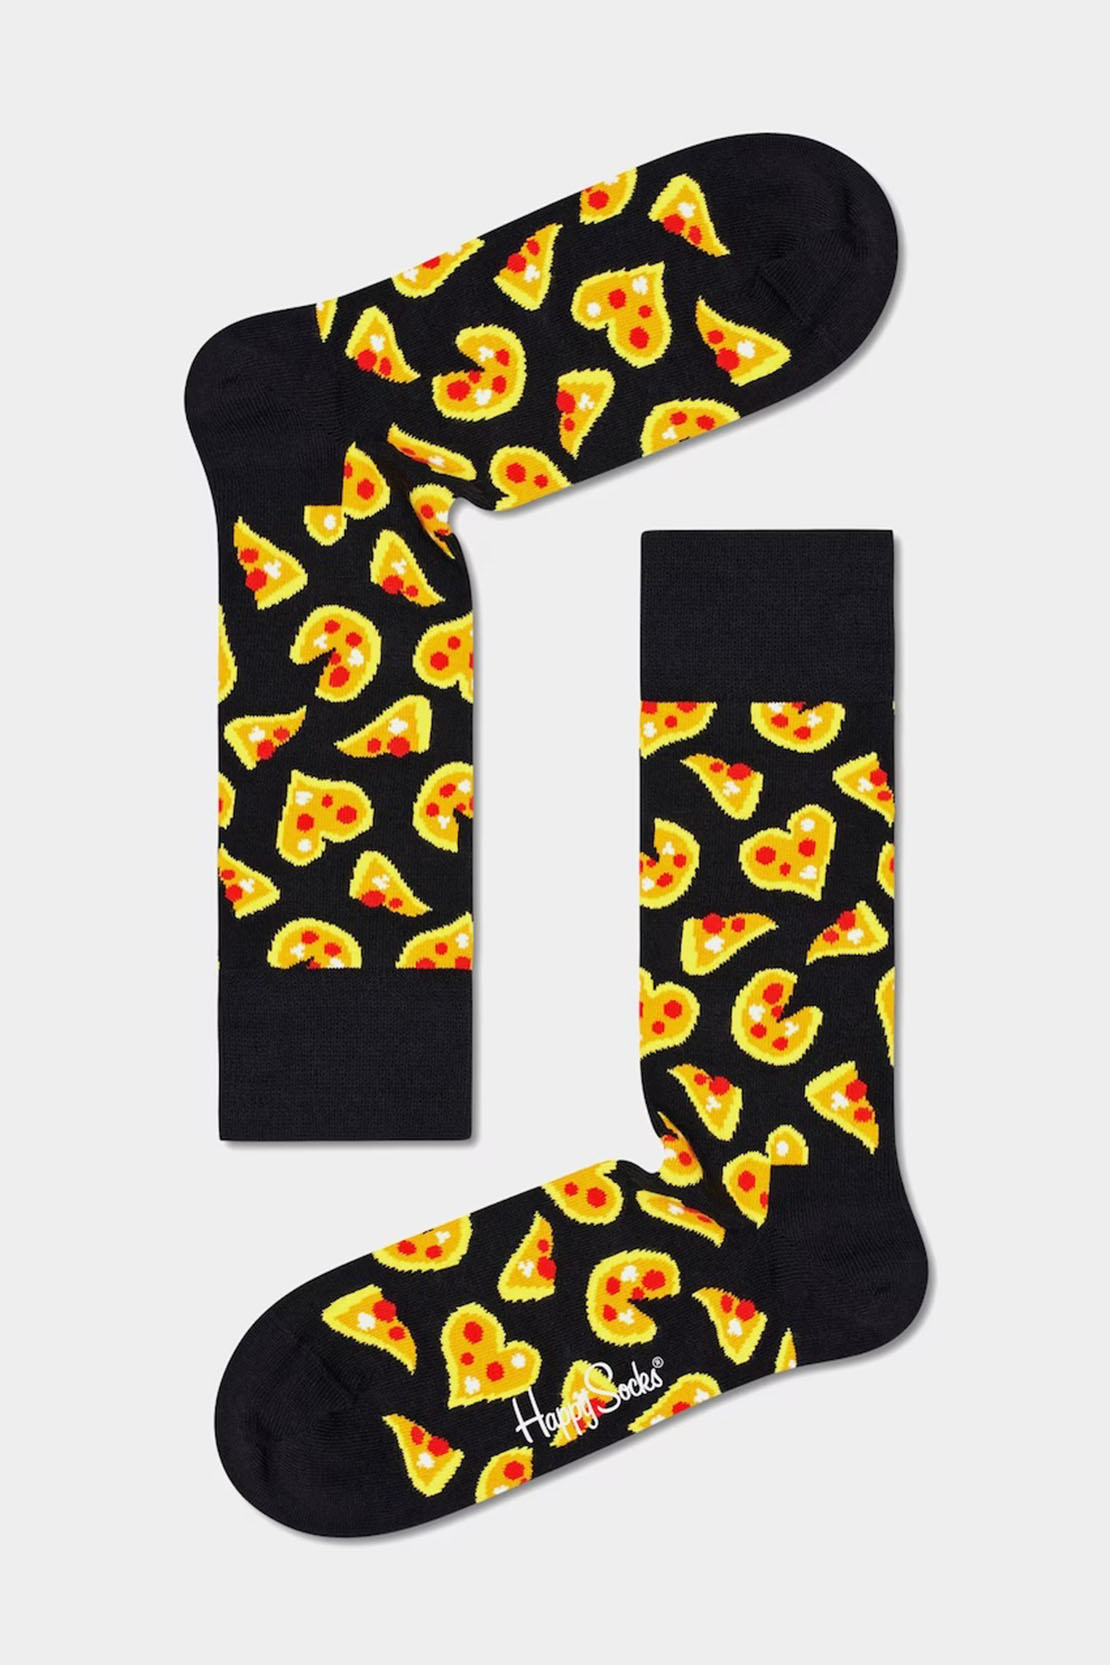 HAPPY SOCKS - PIZZA LOVE Socks in Black PLS01-9300